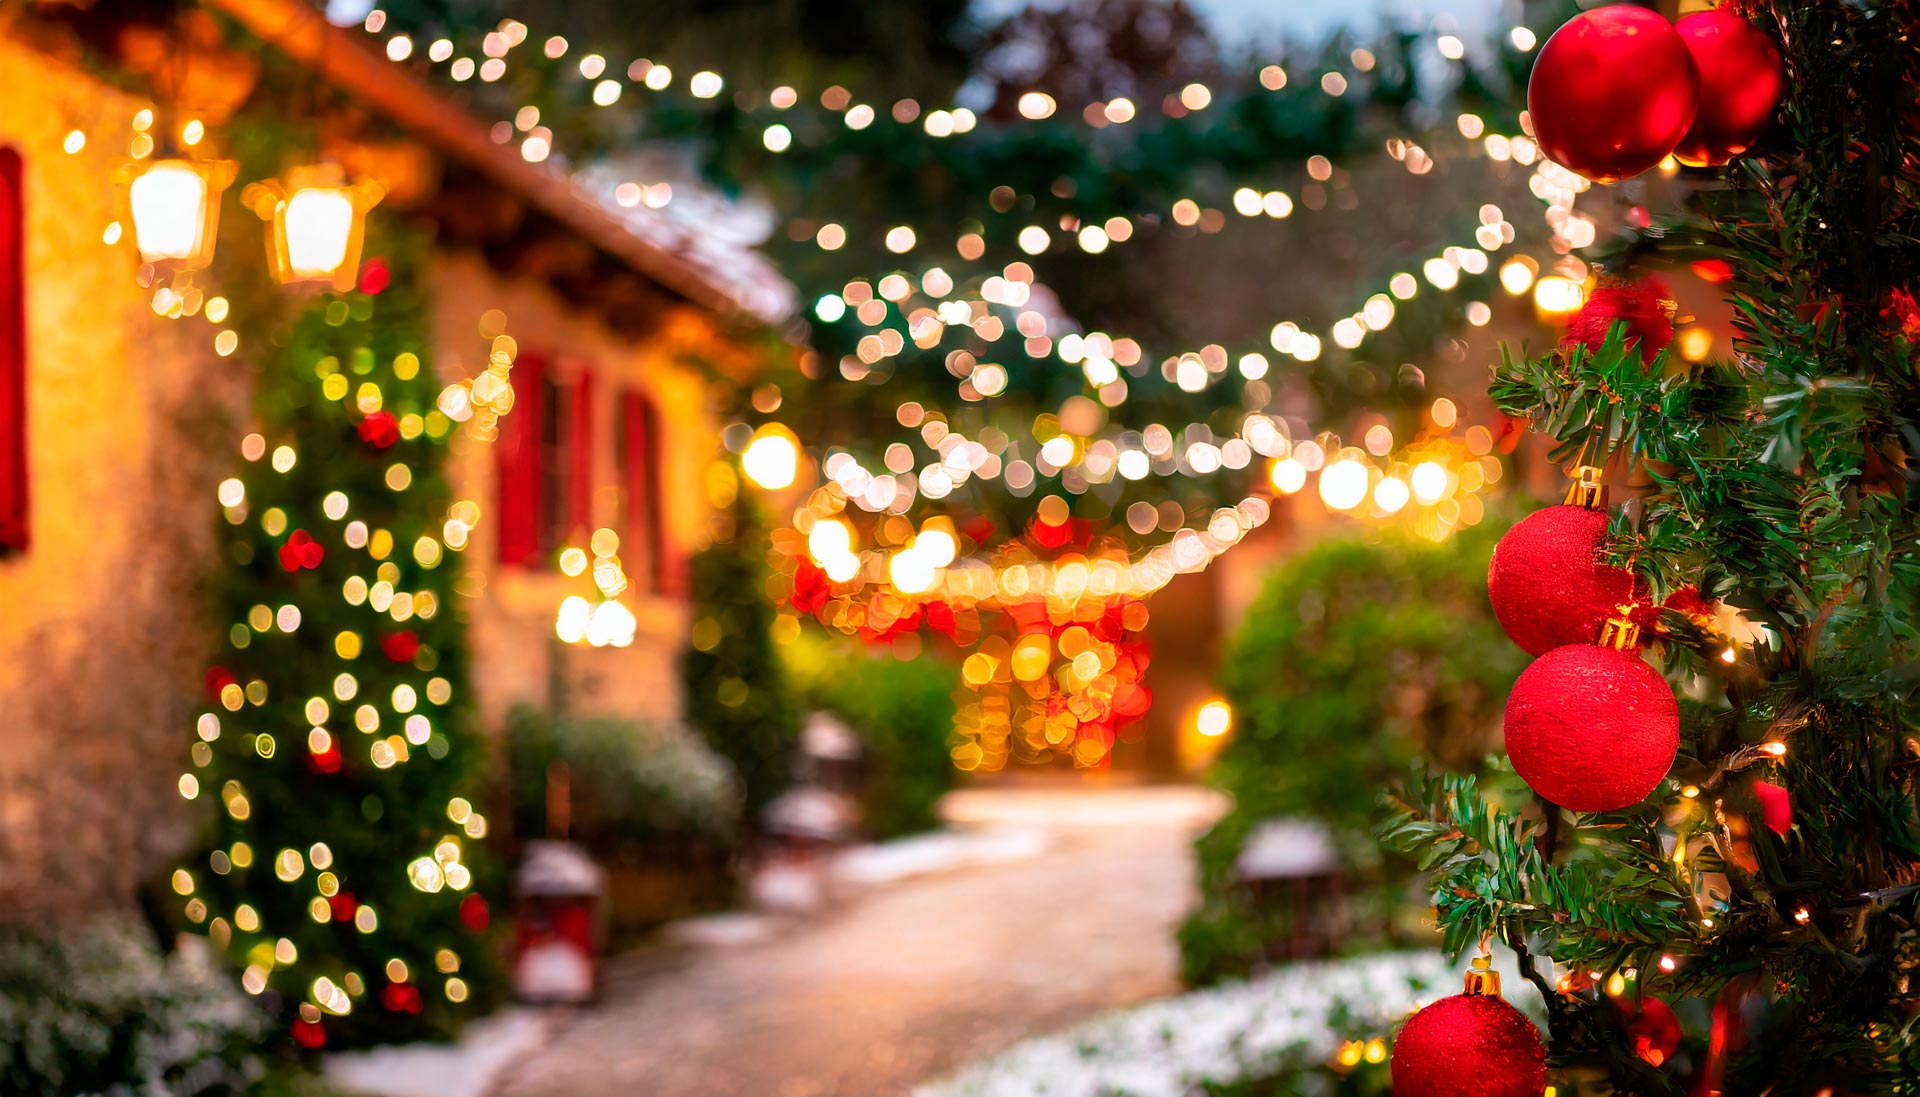 Veduta di un giardino decorato con addobbi natalizi e illuminato da molte luci a LED.